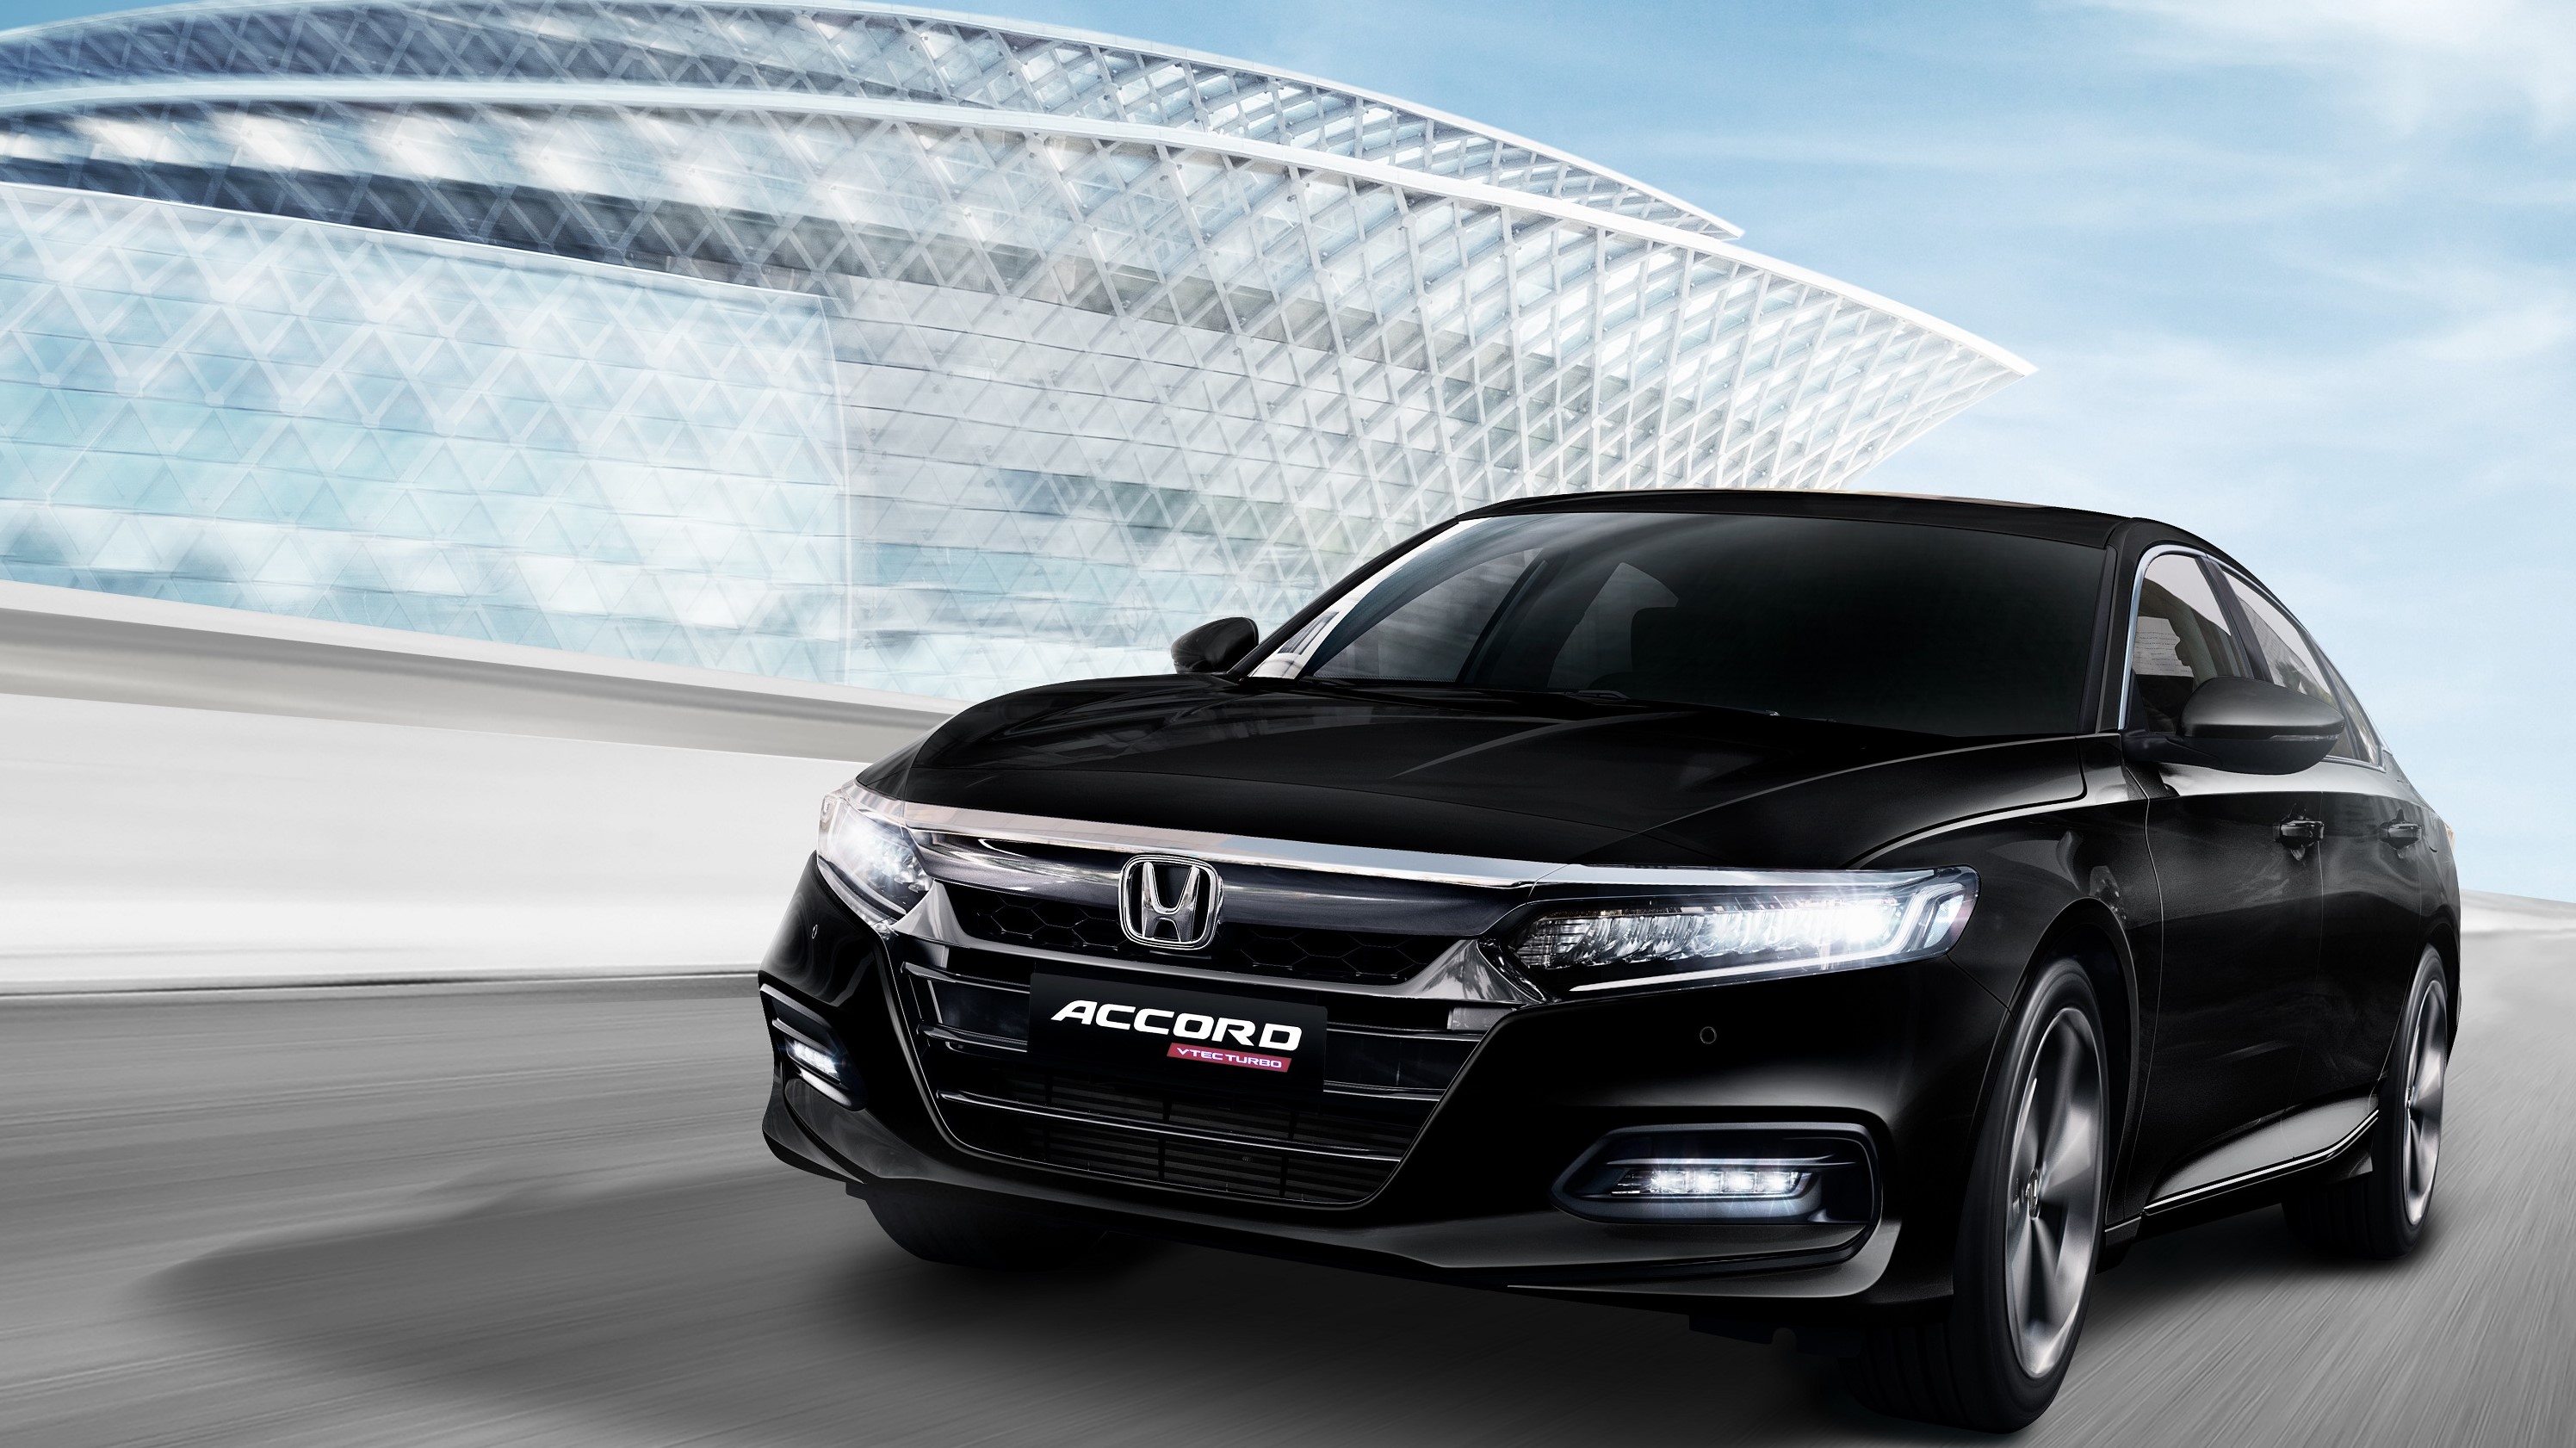 Honda Accord thế hệ 10 sẽ ra mắt thị trường Việt trong tháng 10